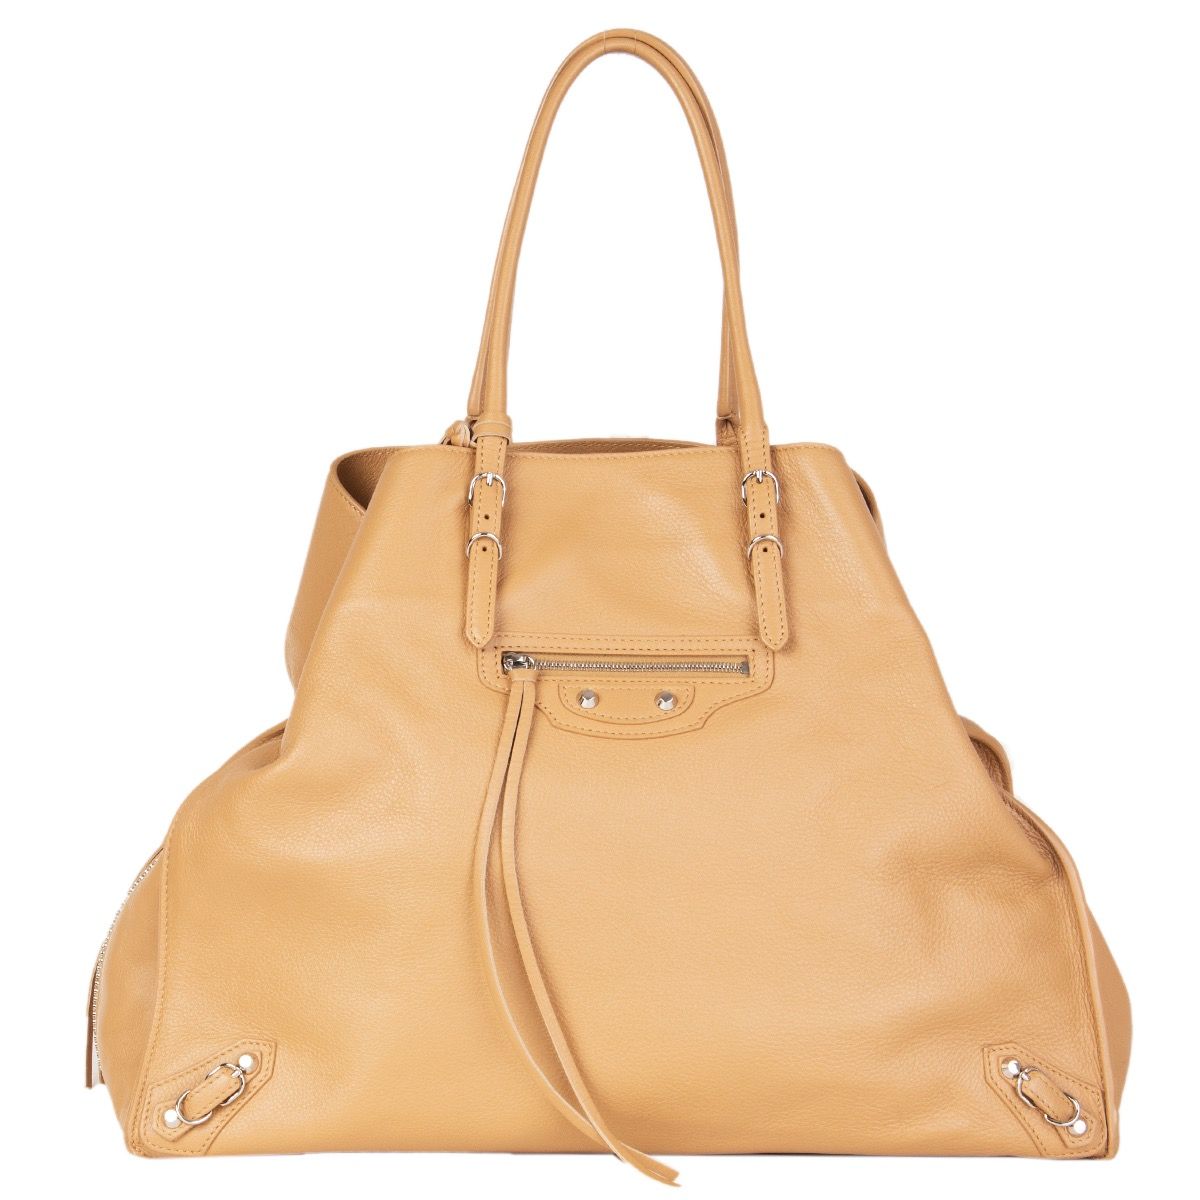 Balenciaga Papier Bags  Handbags for Women  Authenticity Guaranteed  eBay